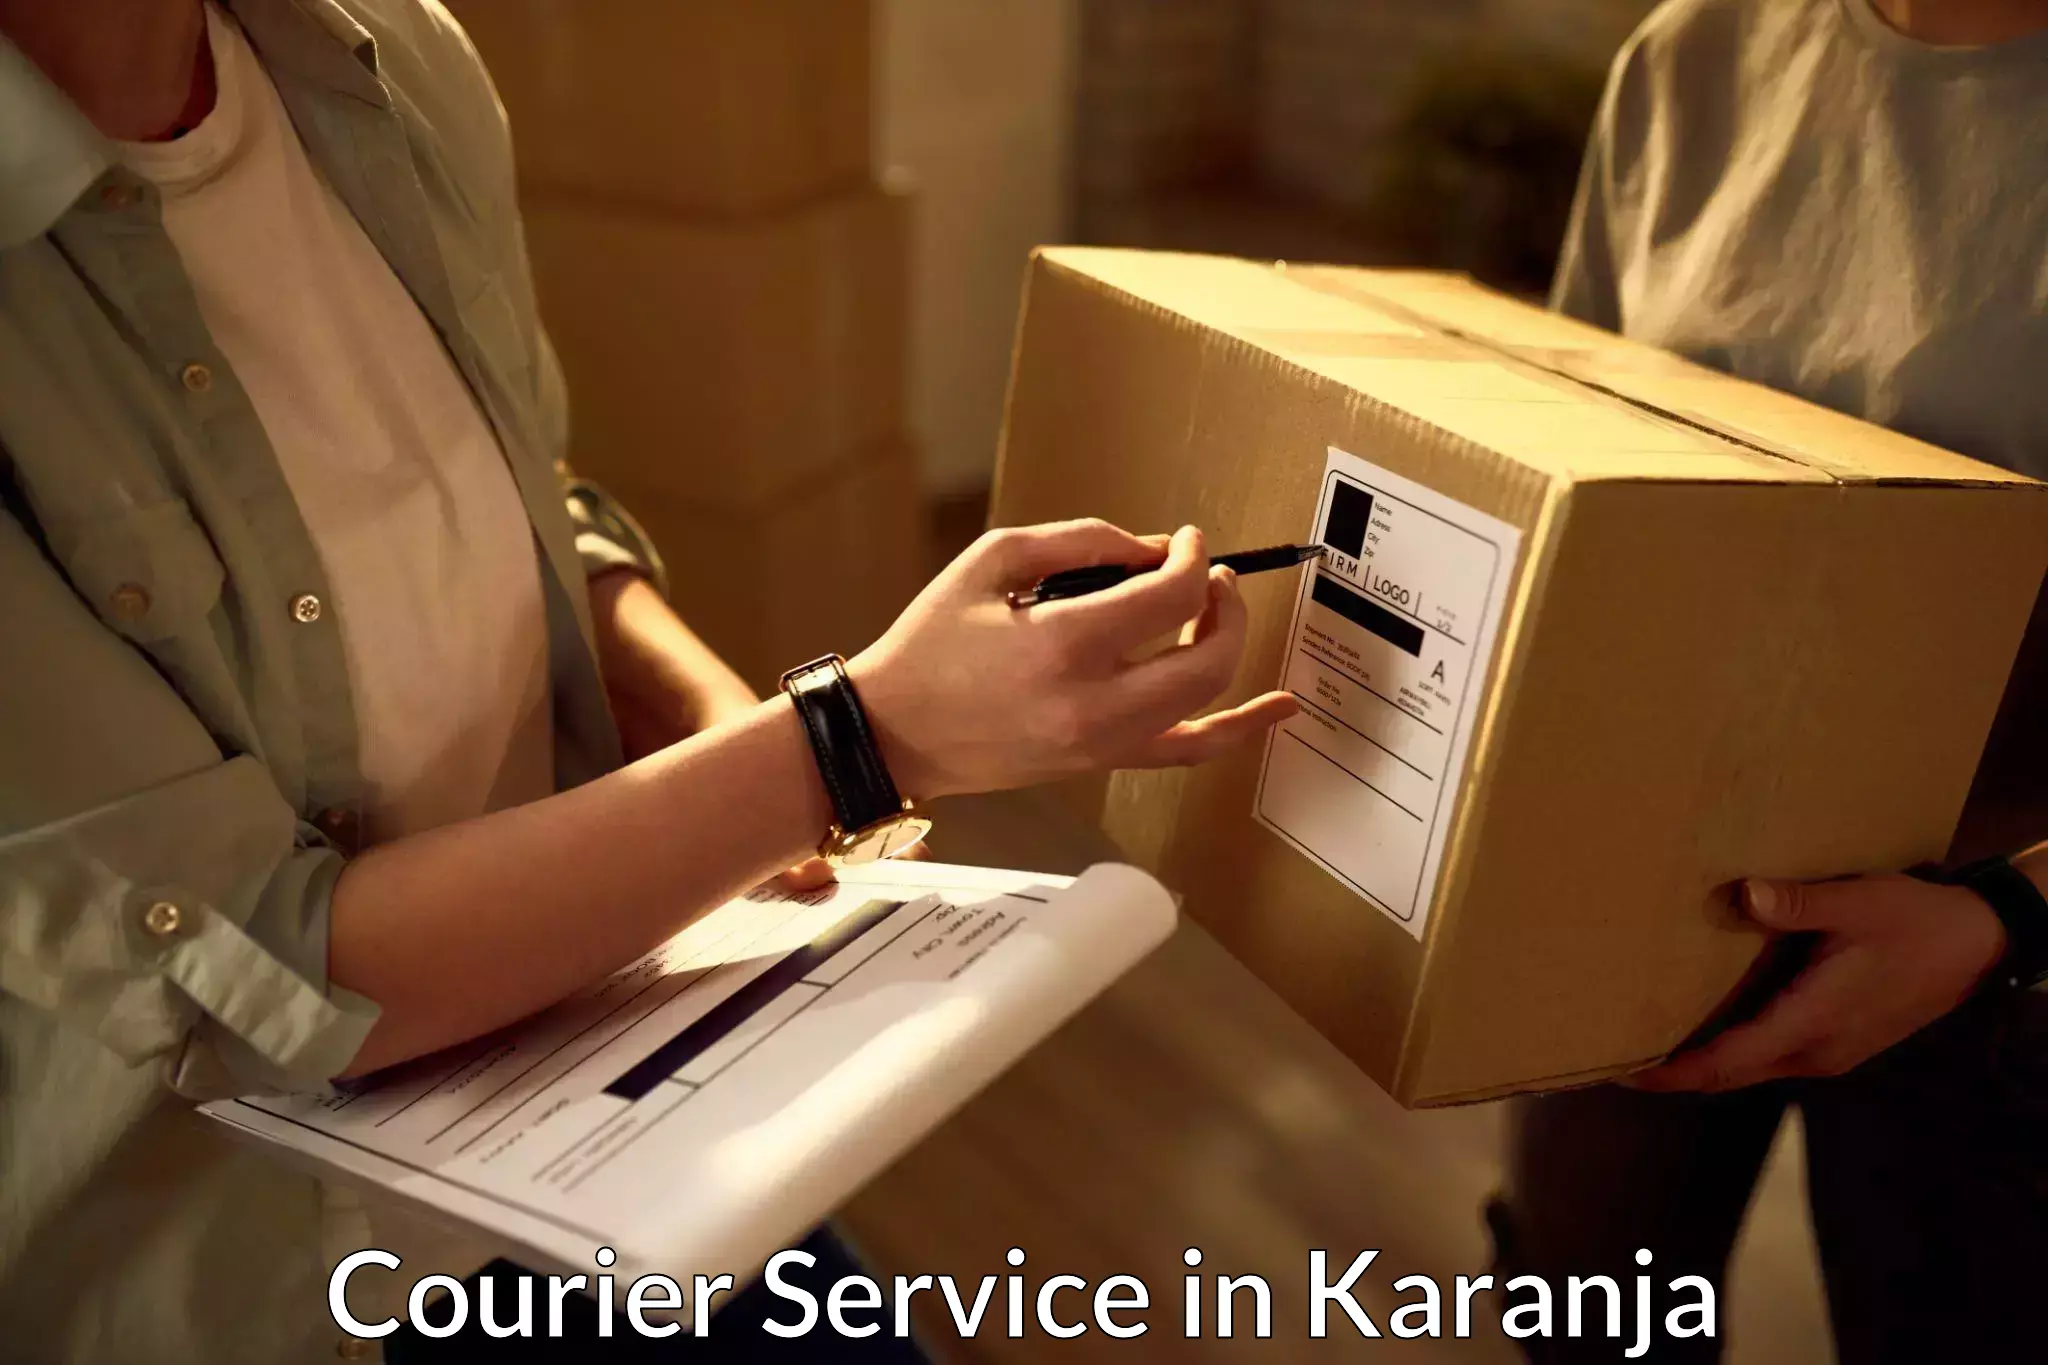 Tech-enabled shipping in Karanja